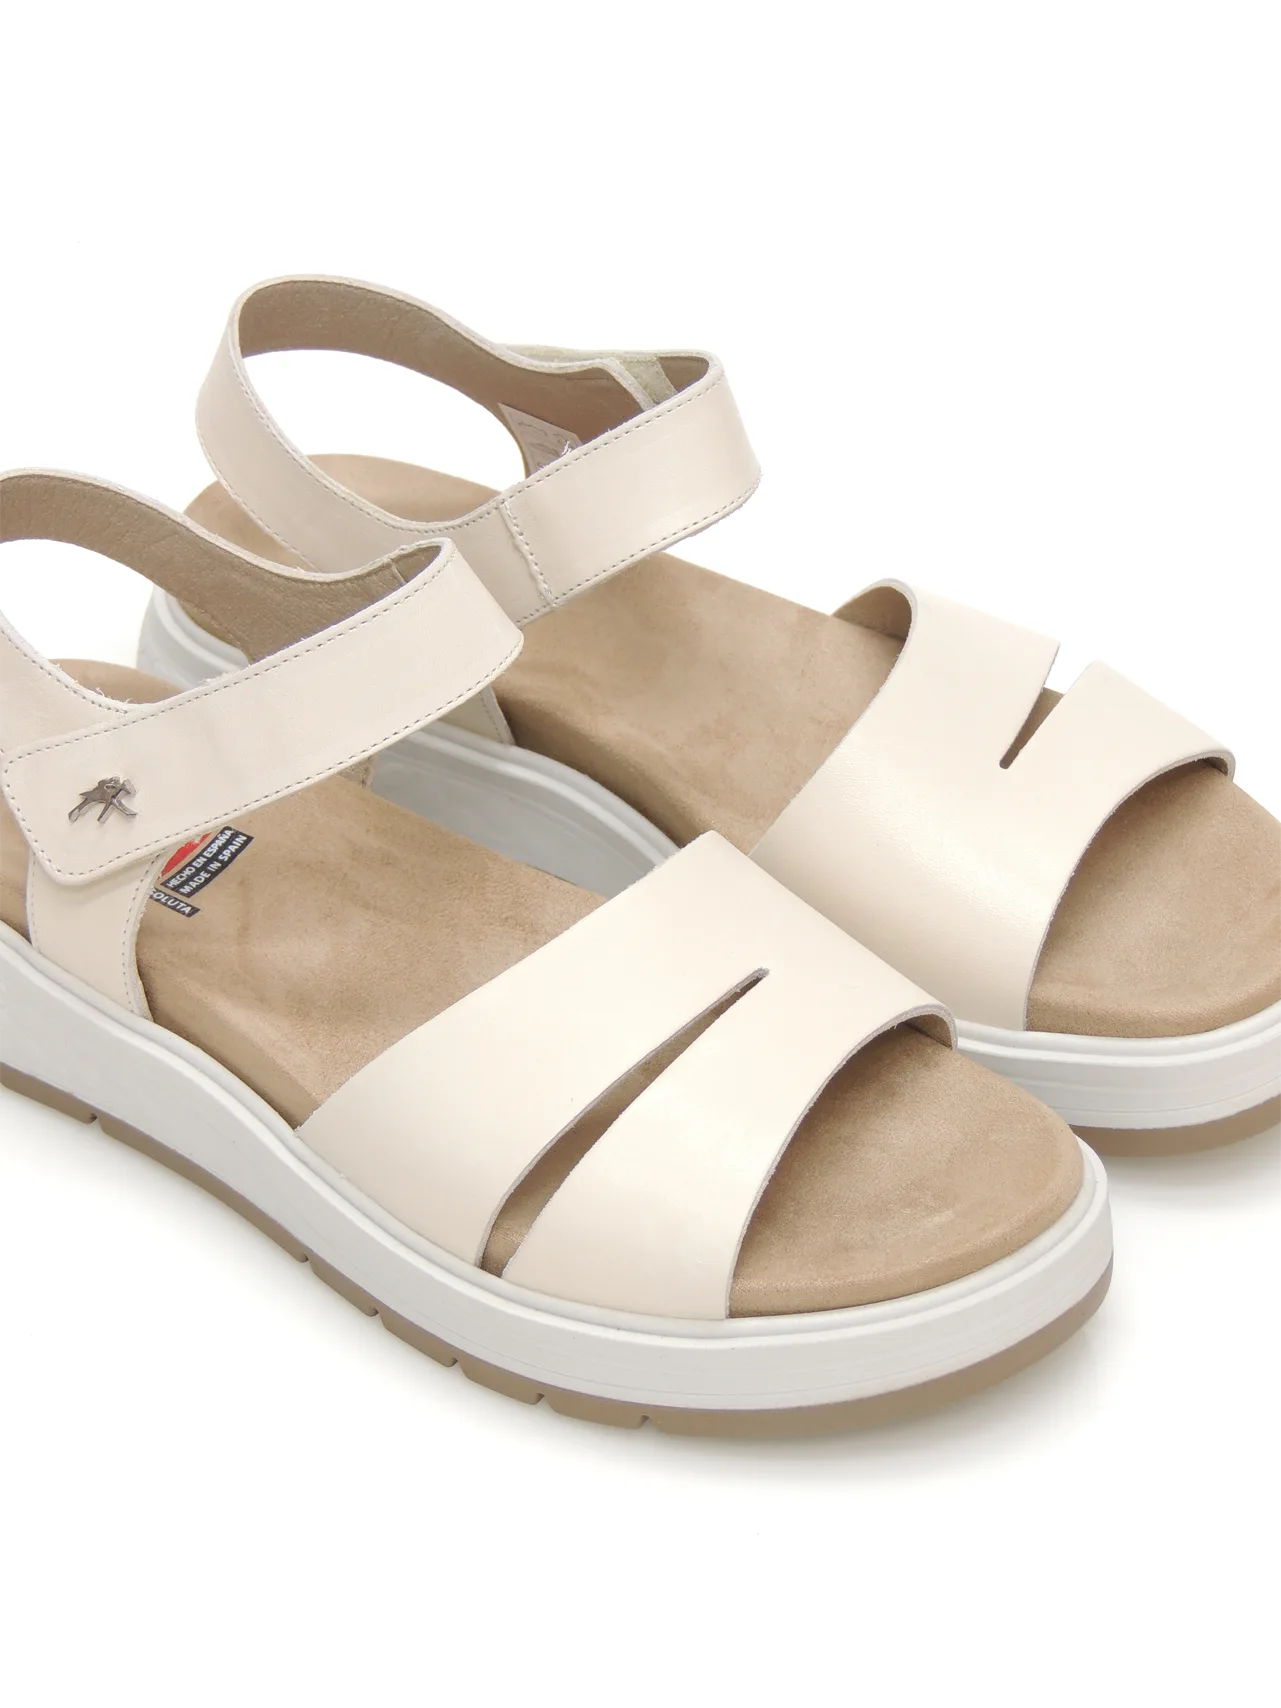 sandalias--fluchos-f2006-piel-beige